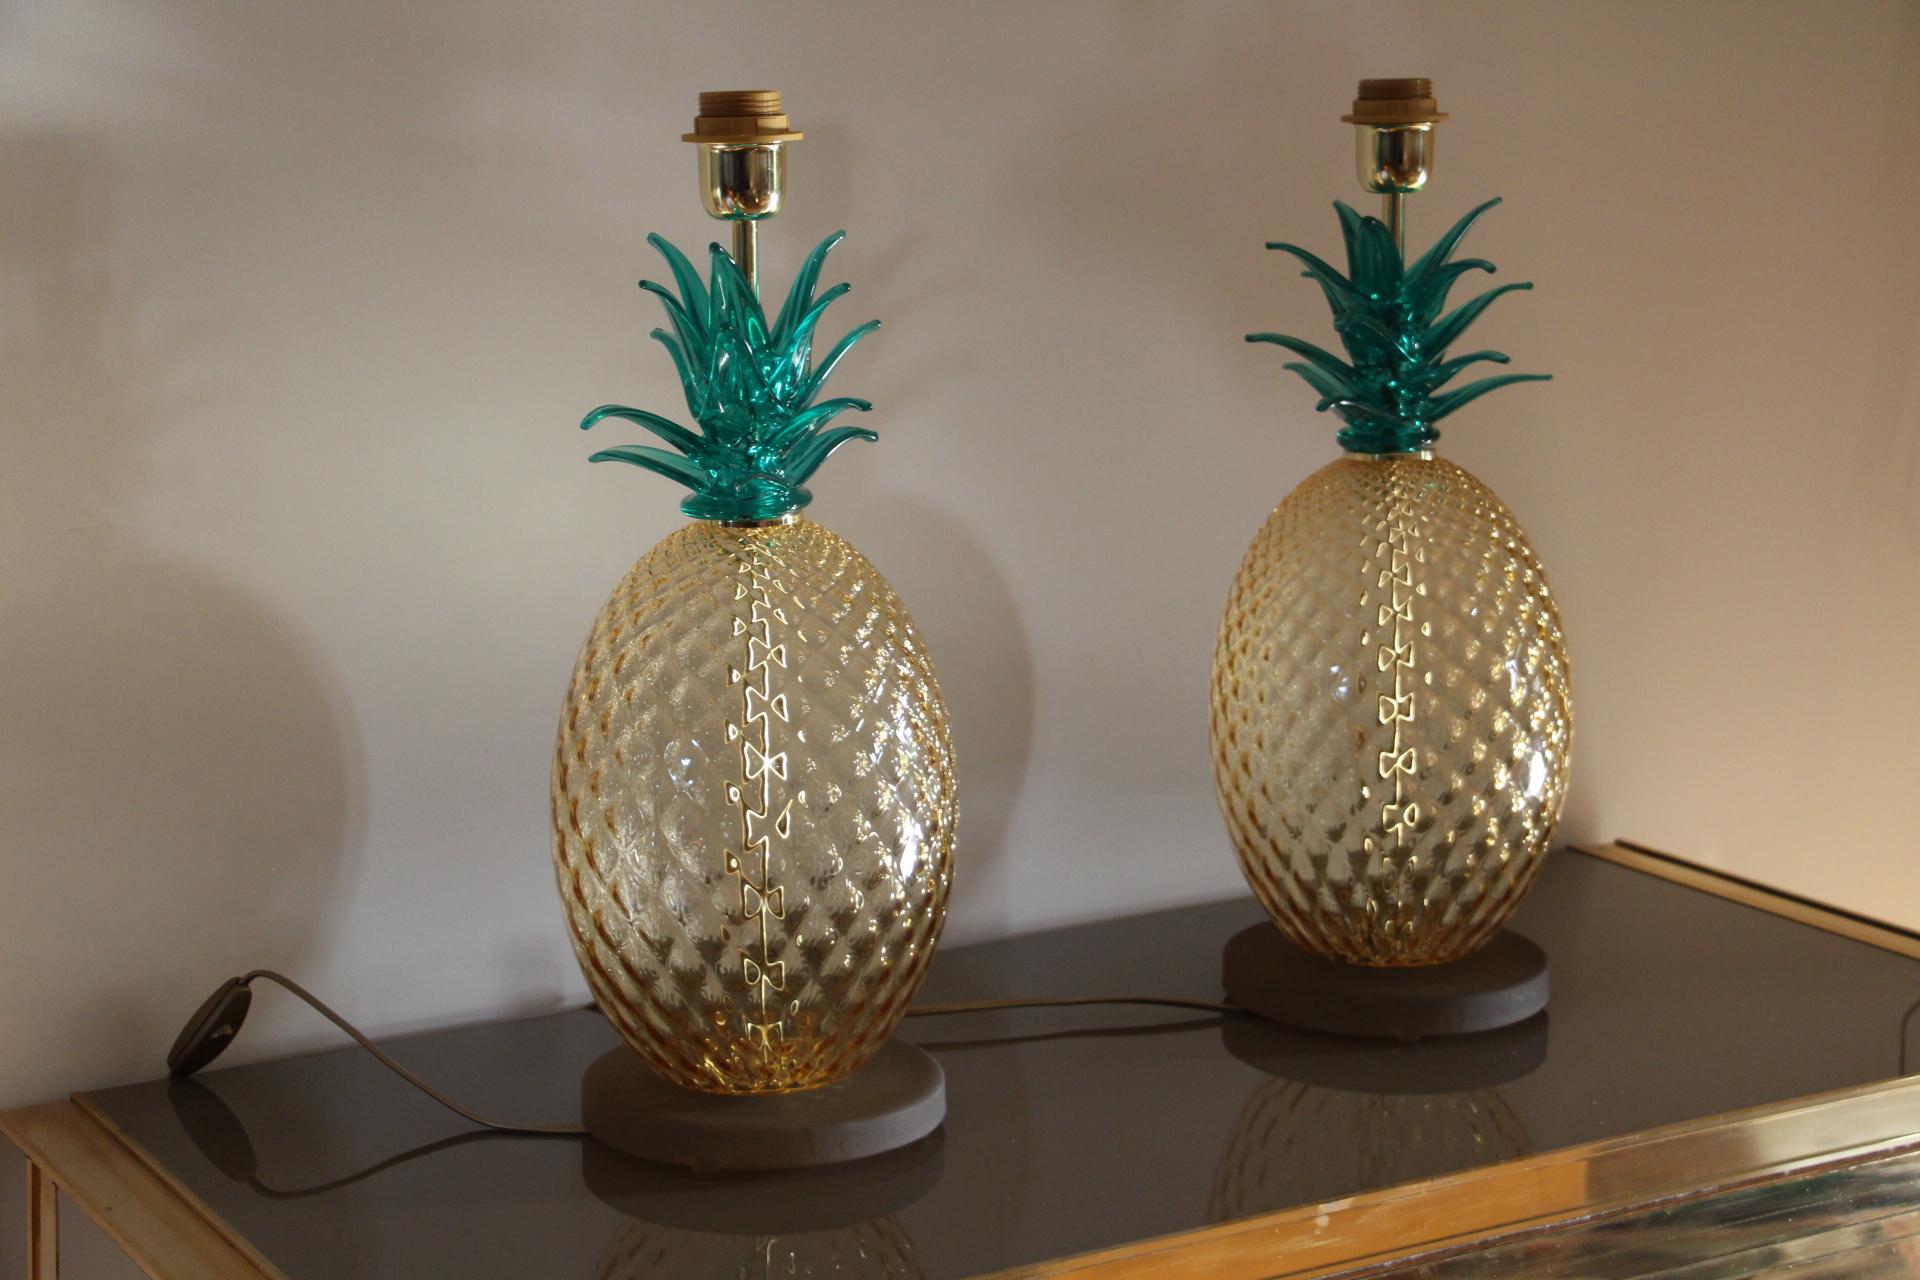 Cette magnifique paire de lampes de table a été entièrement réalisée à la main à Murano.
Elles présentent un corps principal en verre texturé ambré, un motif en nid d'abeille qui multiplie les reflets sur un support rond en verre fumé. Sur le